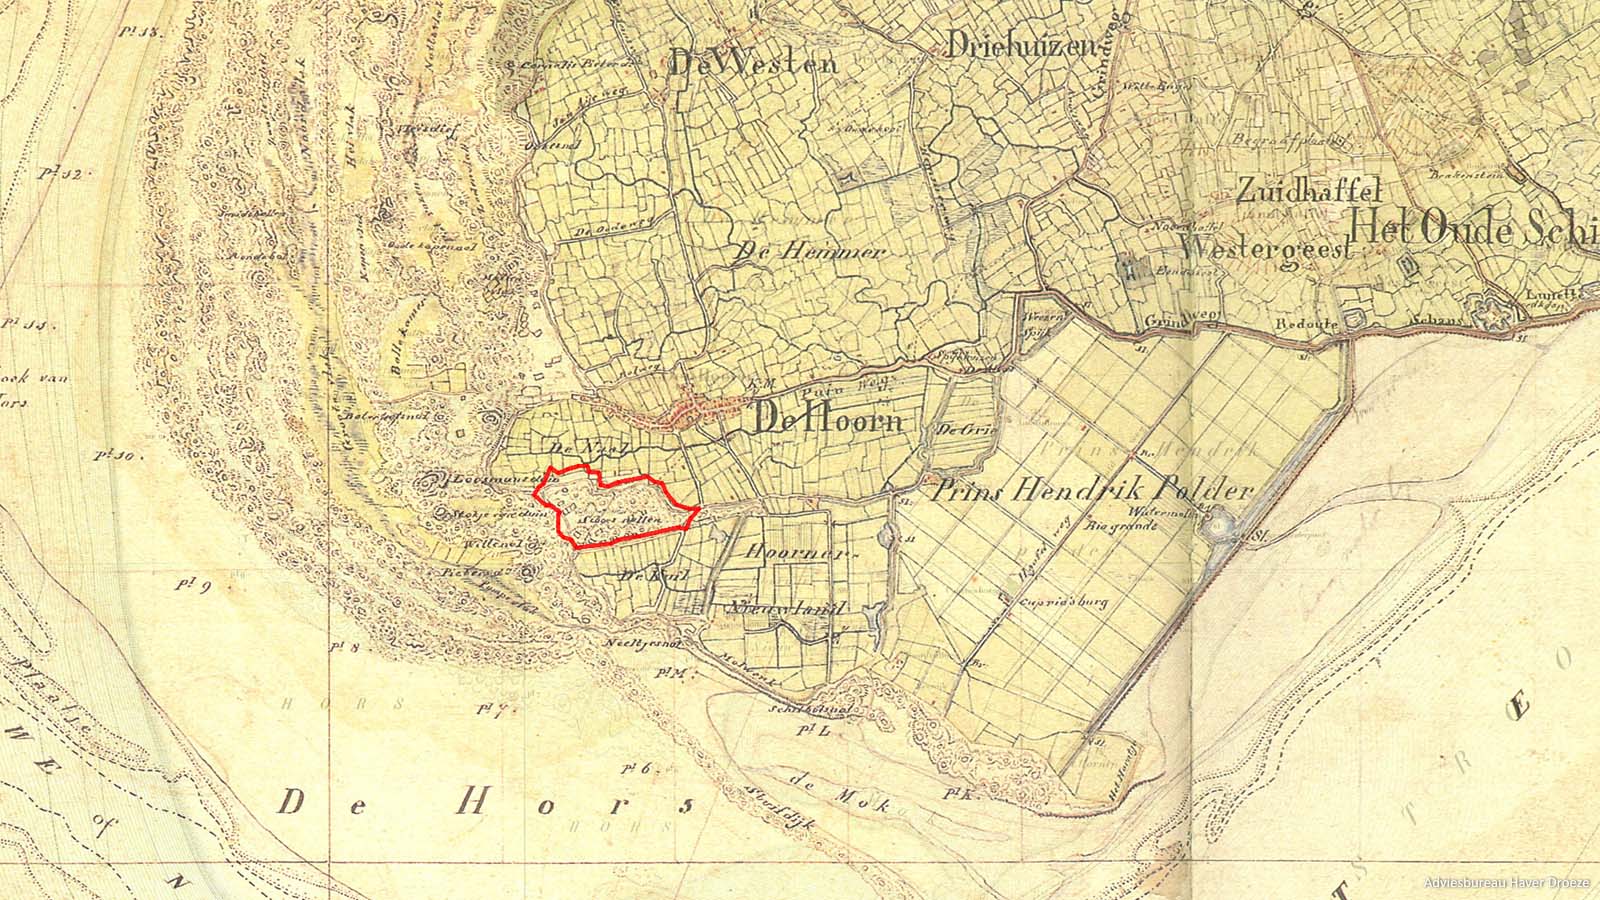 Historische kaart met locatie camping Loodsmansduin